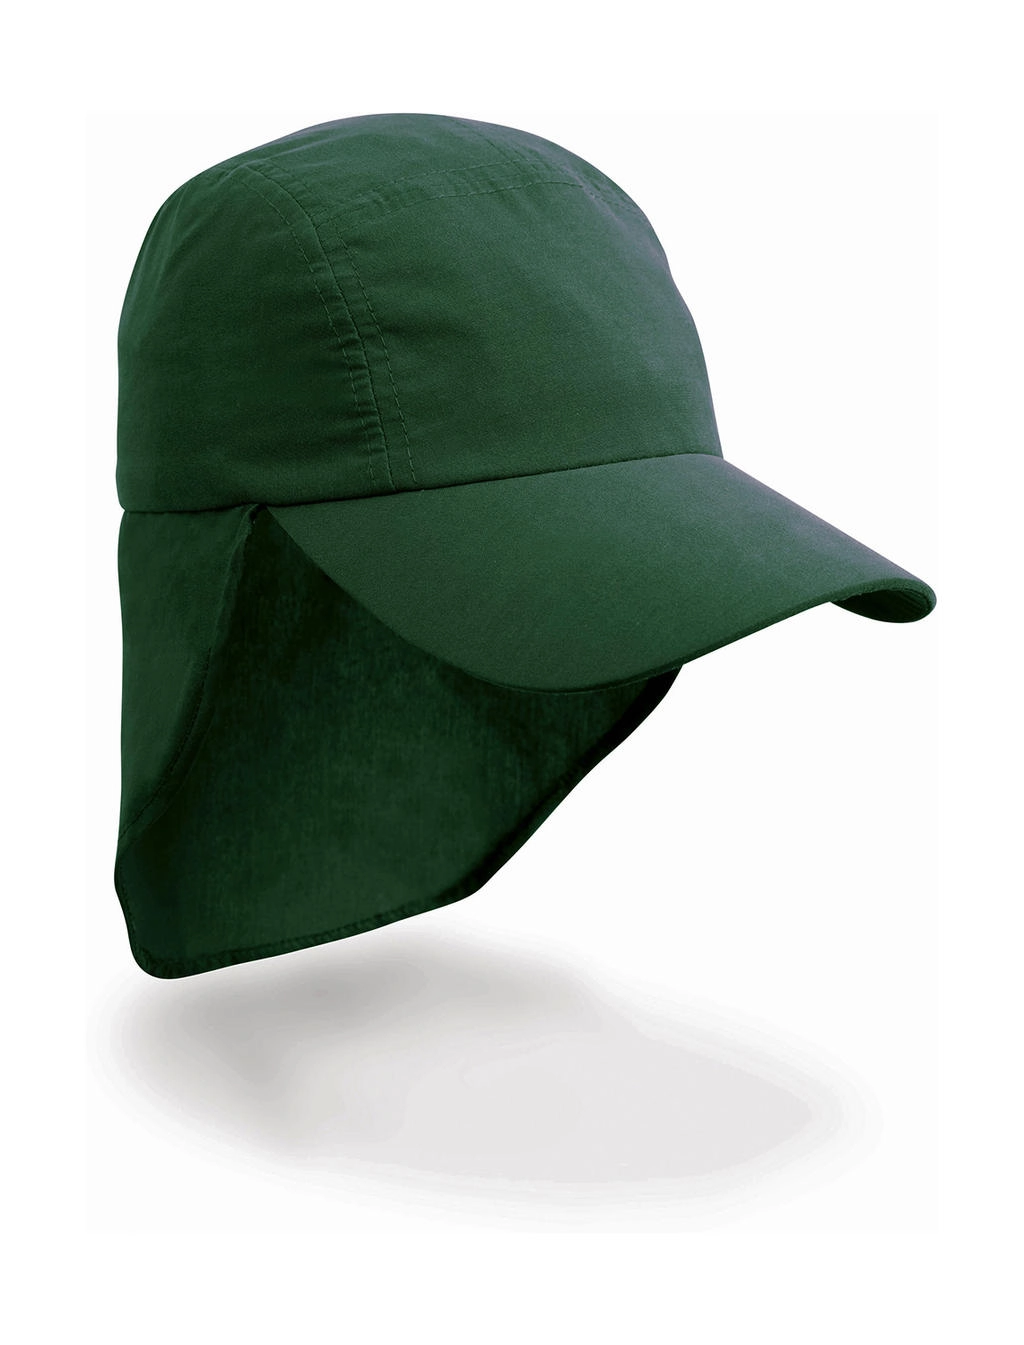 Junior Ulti Legionnaire Cap zum Besticken und Bedrucken in der Farbe Bottle Green mit Ihren Logo, Schriftzug oder Motiv.